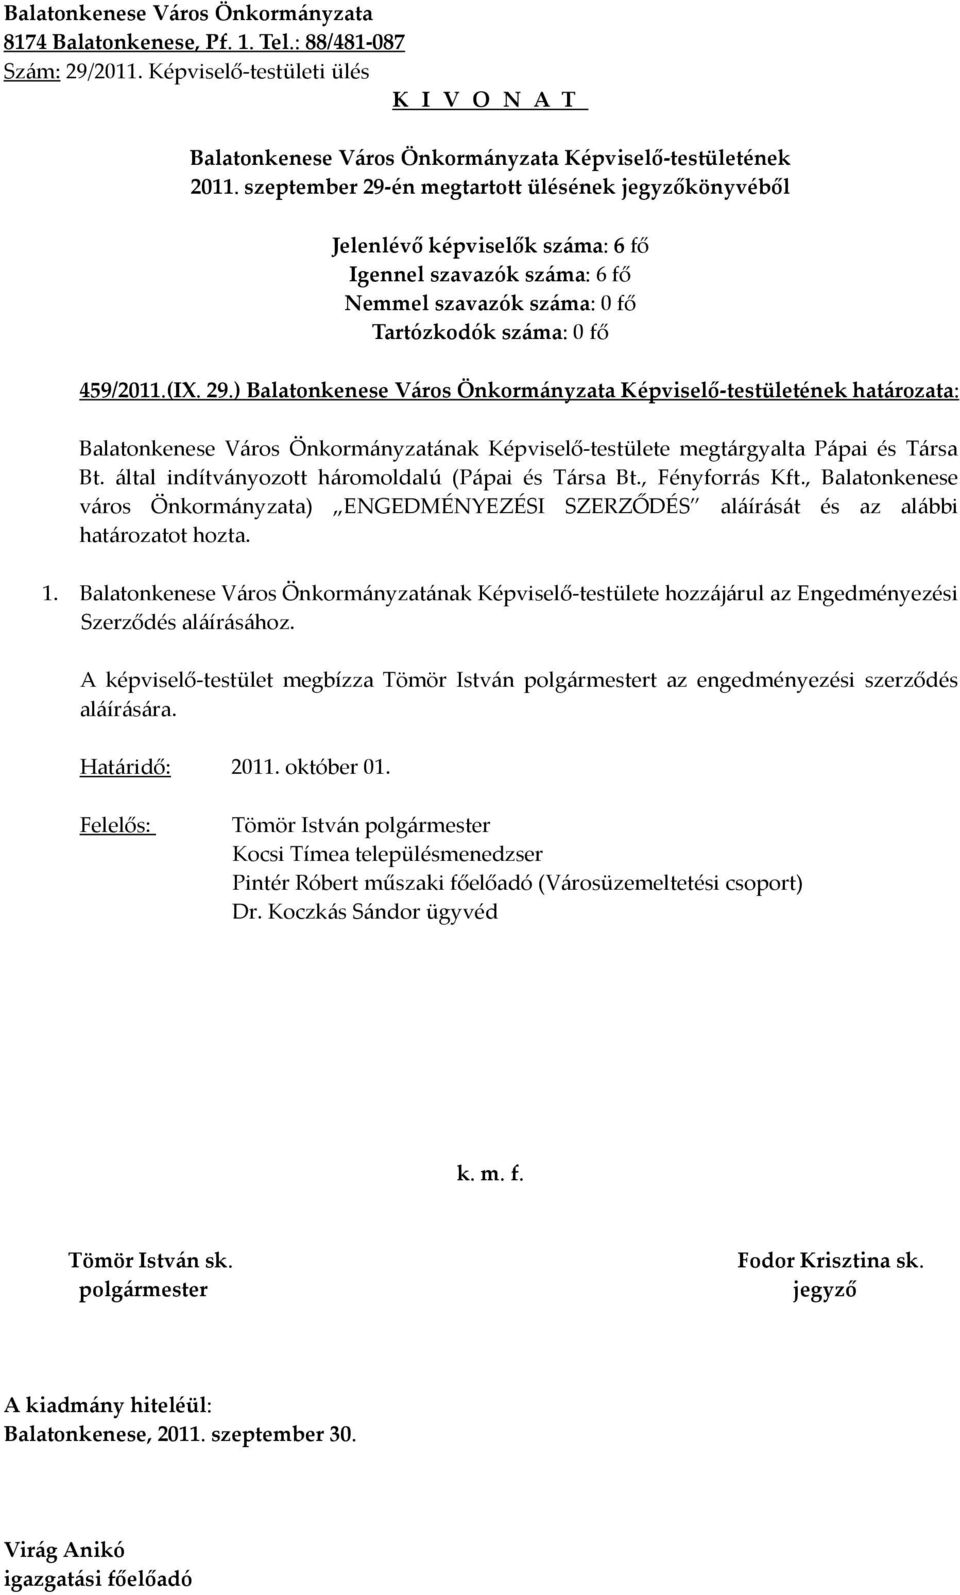 Balatonkenese Város Önkormányzatának Képviselő-testülete hozzájárul az Engedményezési Szerződés aláírásához.